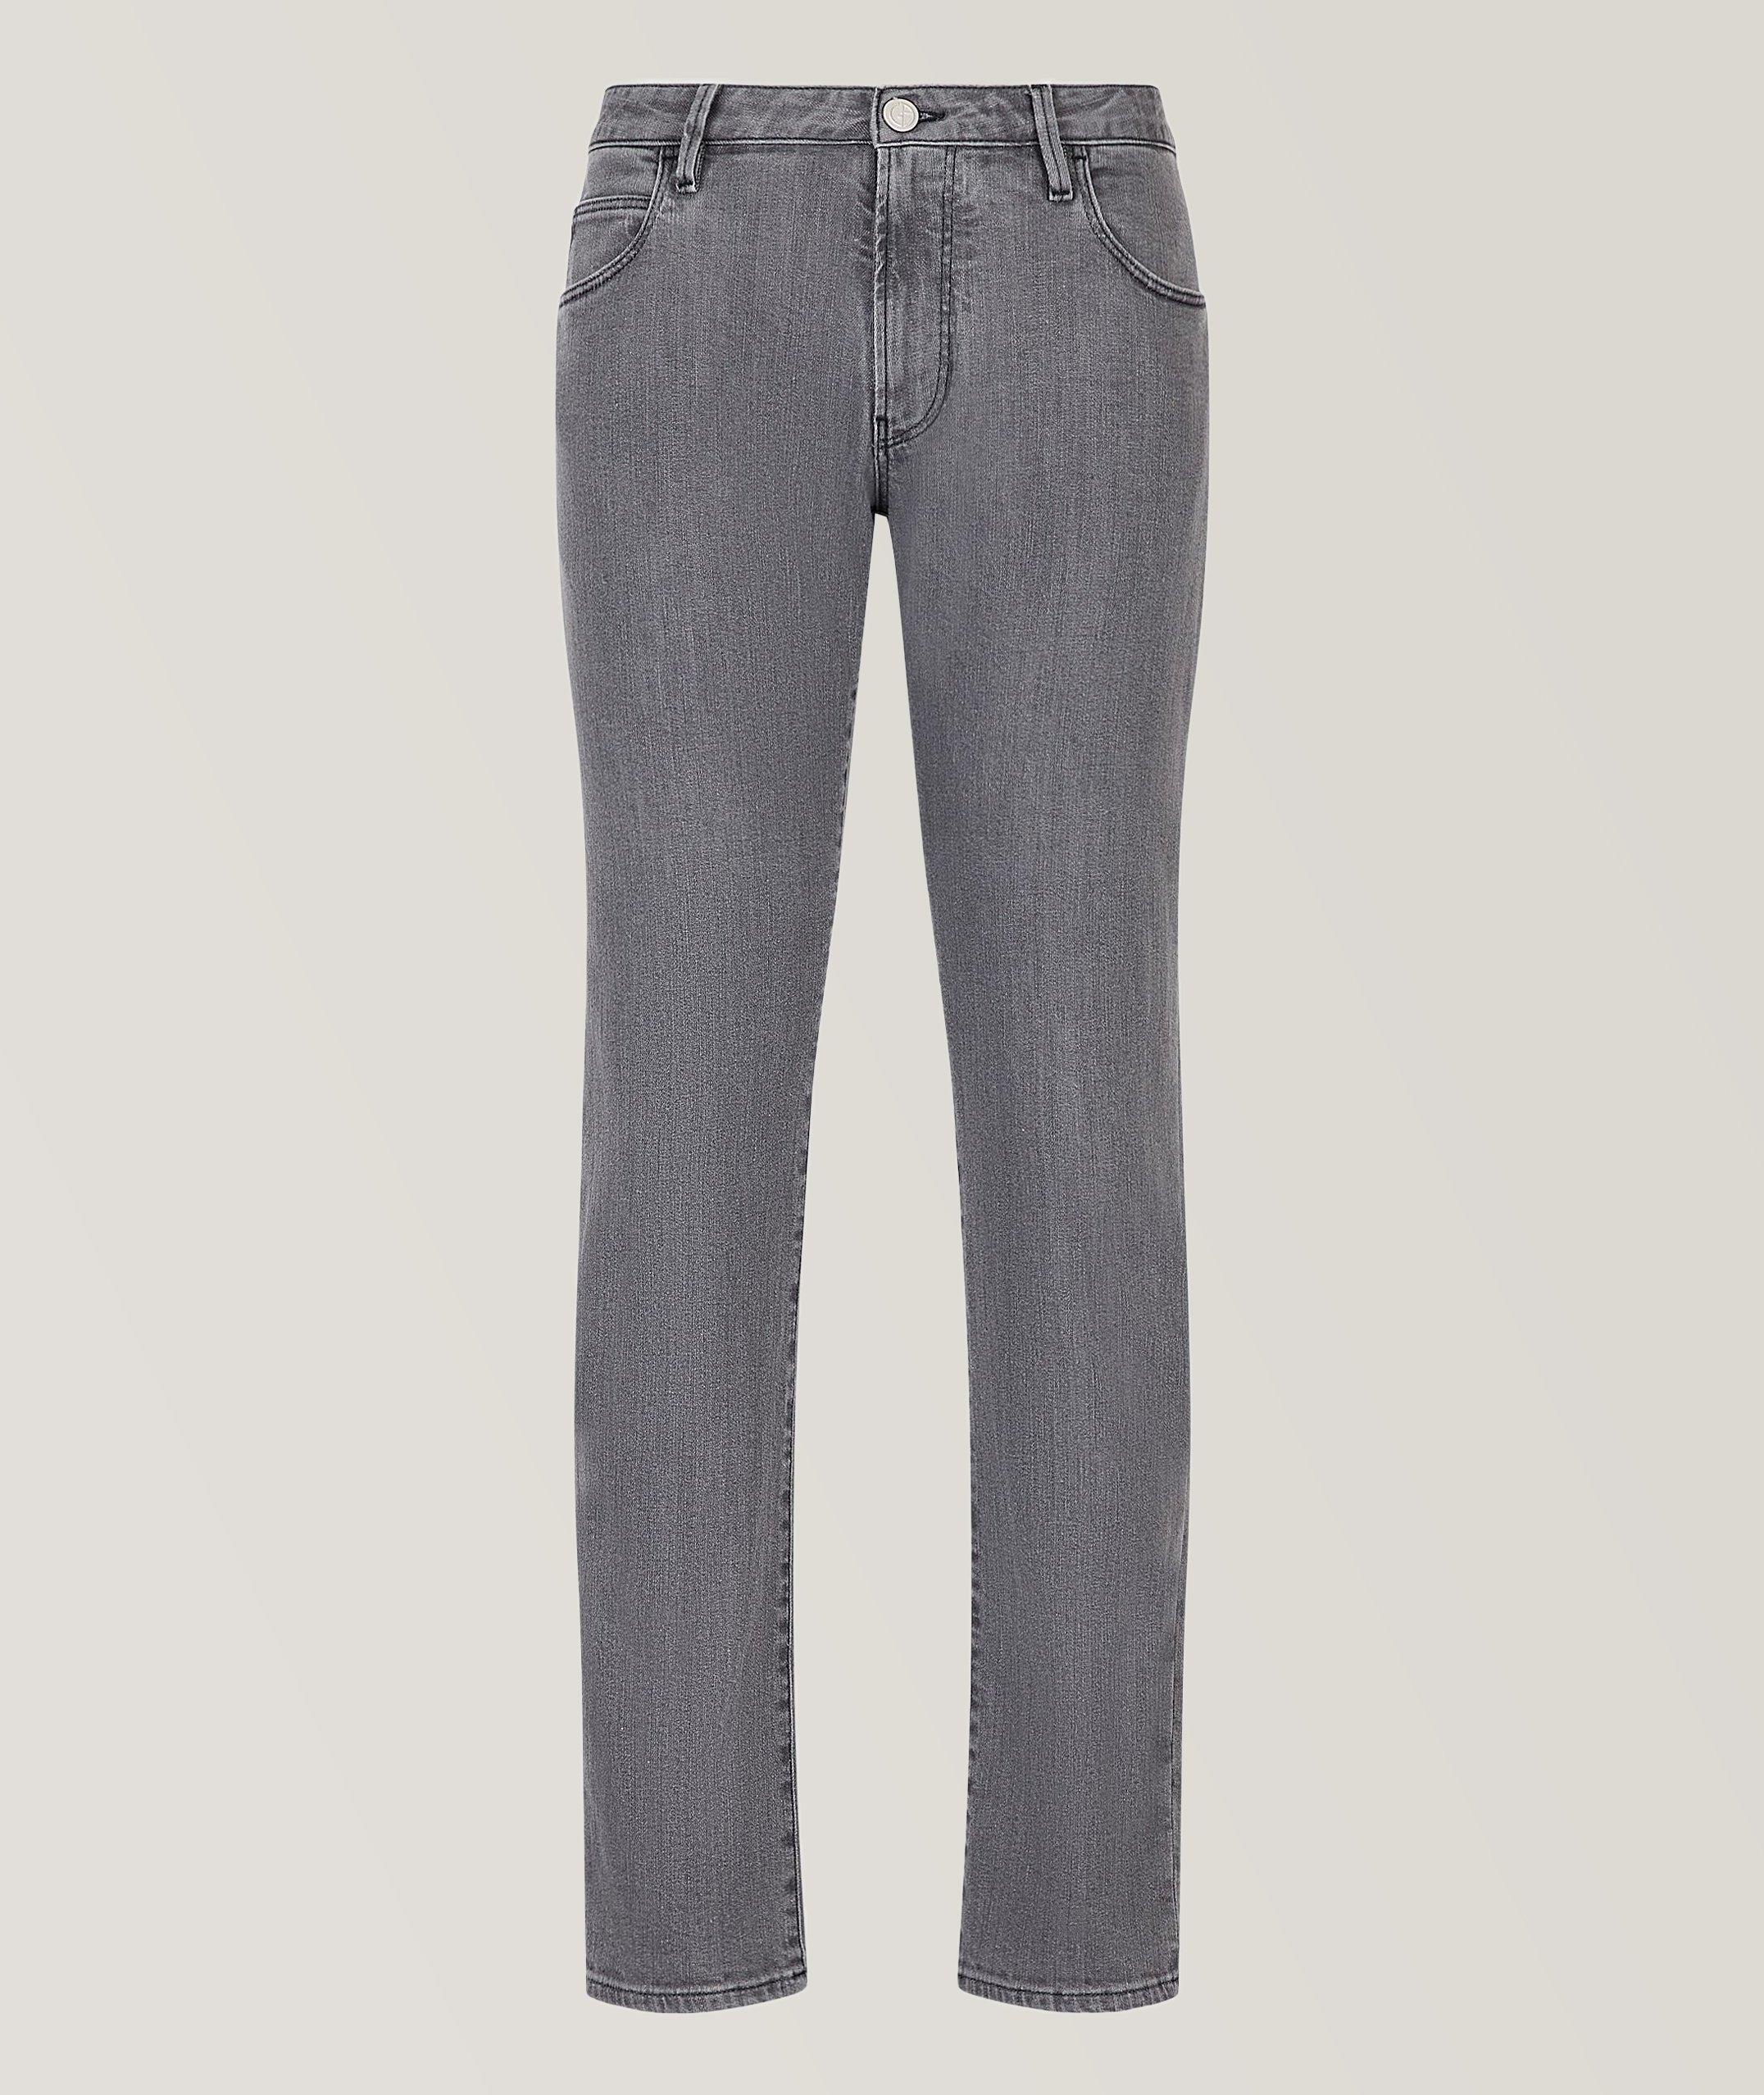 Giorgio Armani Slim-Fit Stretch-Cotton Jeans